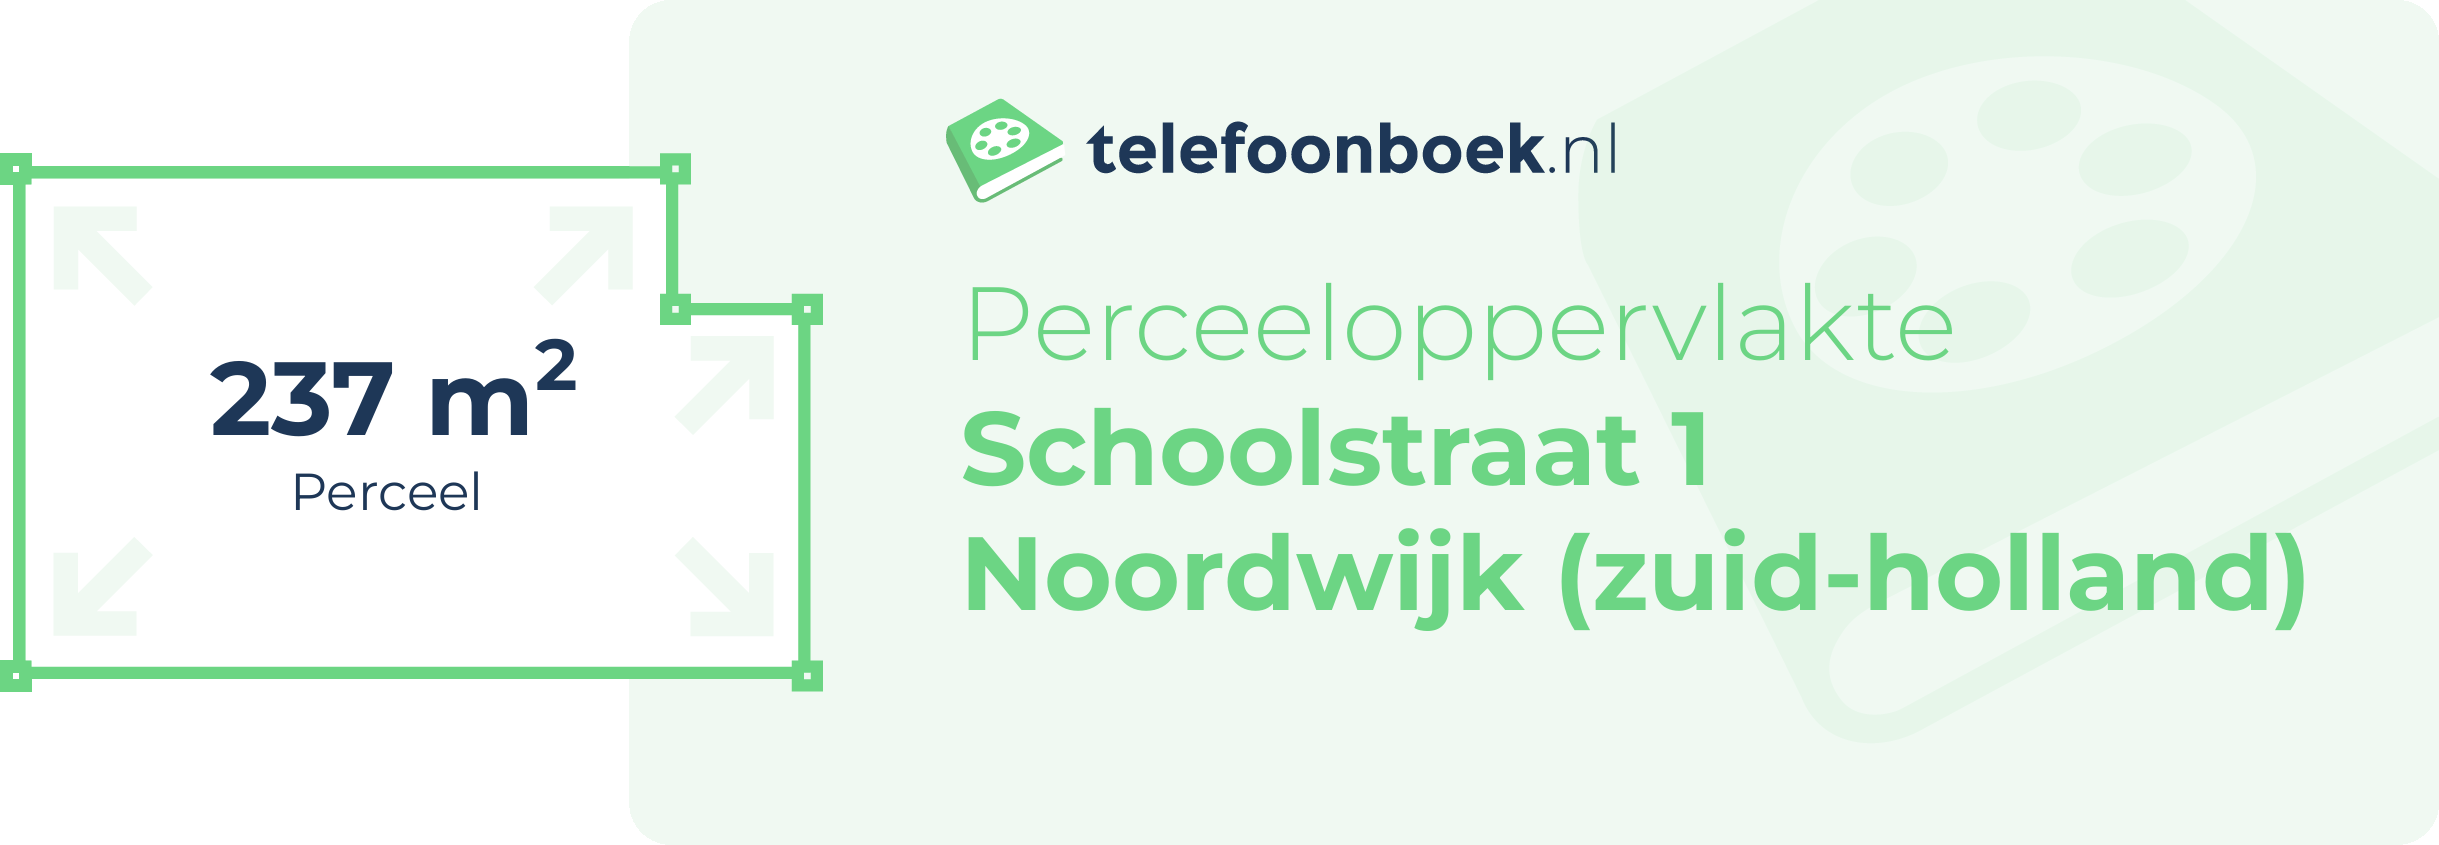 Perceeloppervlakte Schoolstraat 1 Noordwijk (Zuid-Holland)